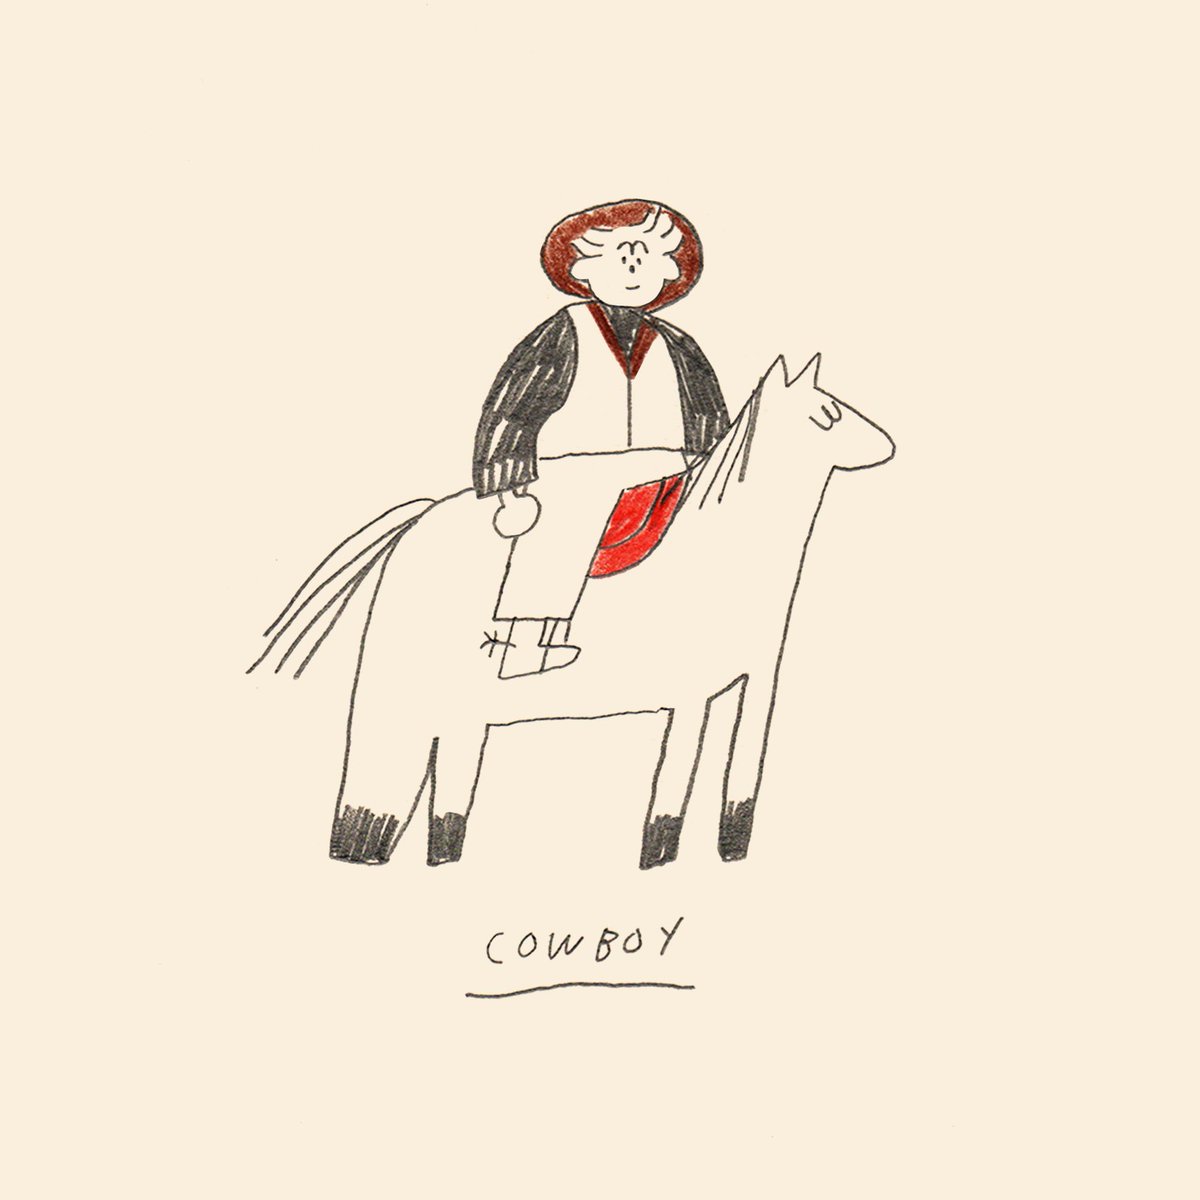 「oct 3: cowboy 」|sareeのイラスト